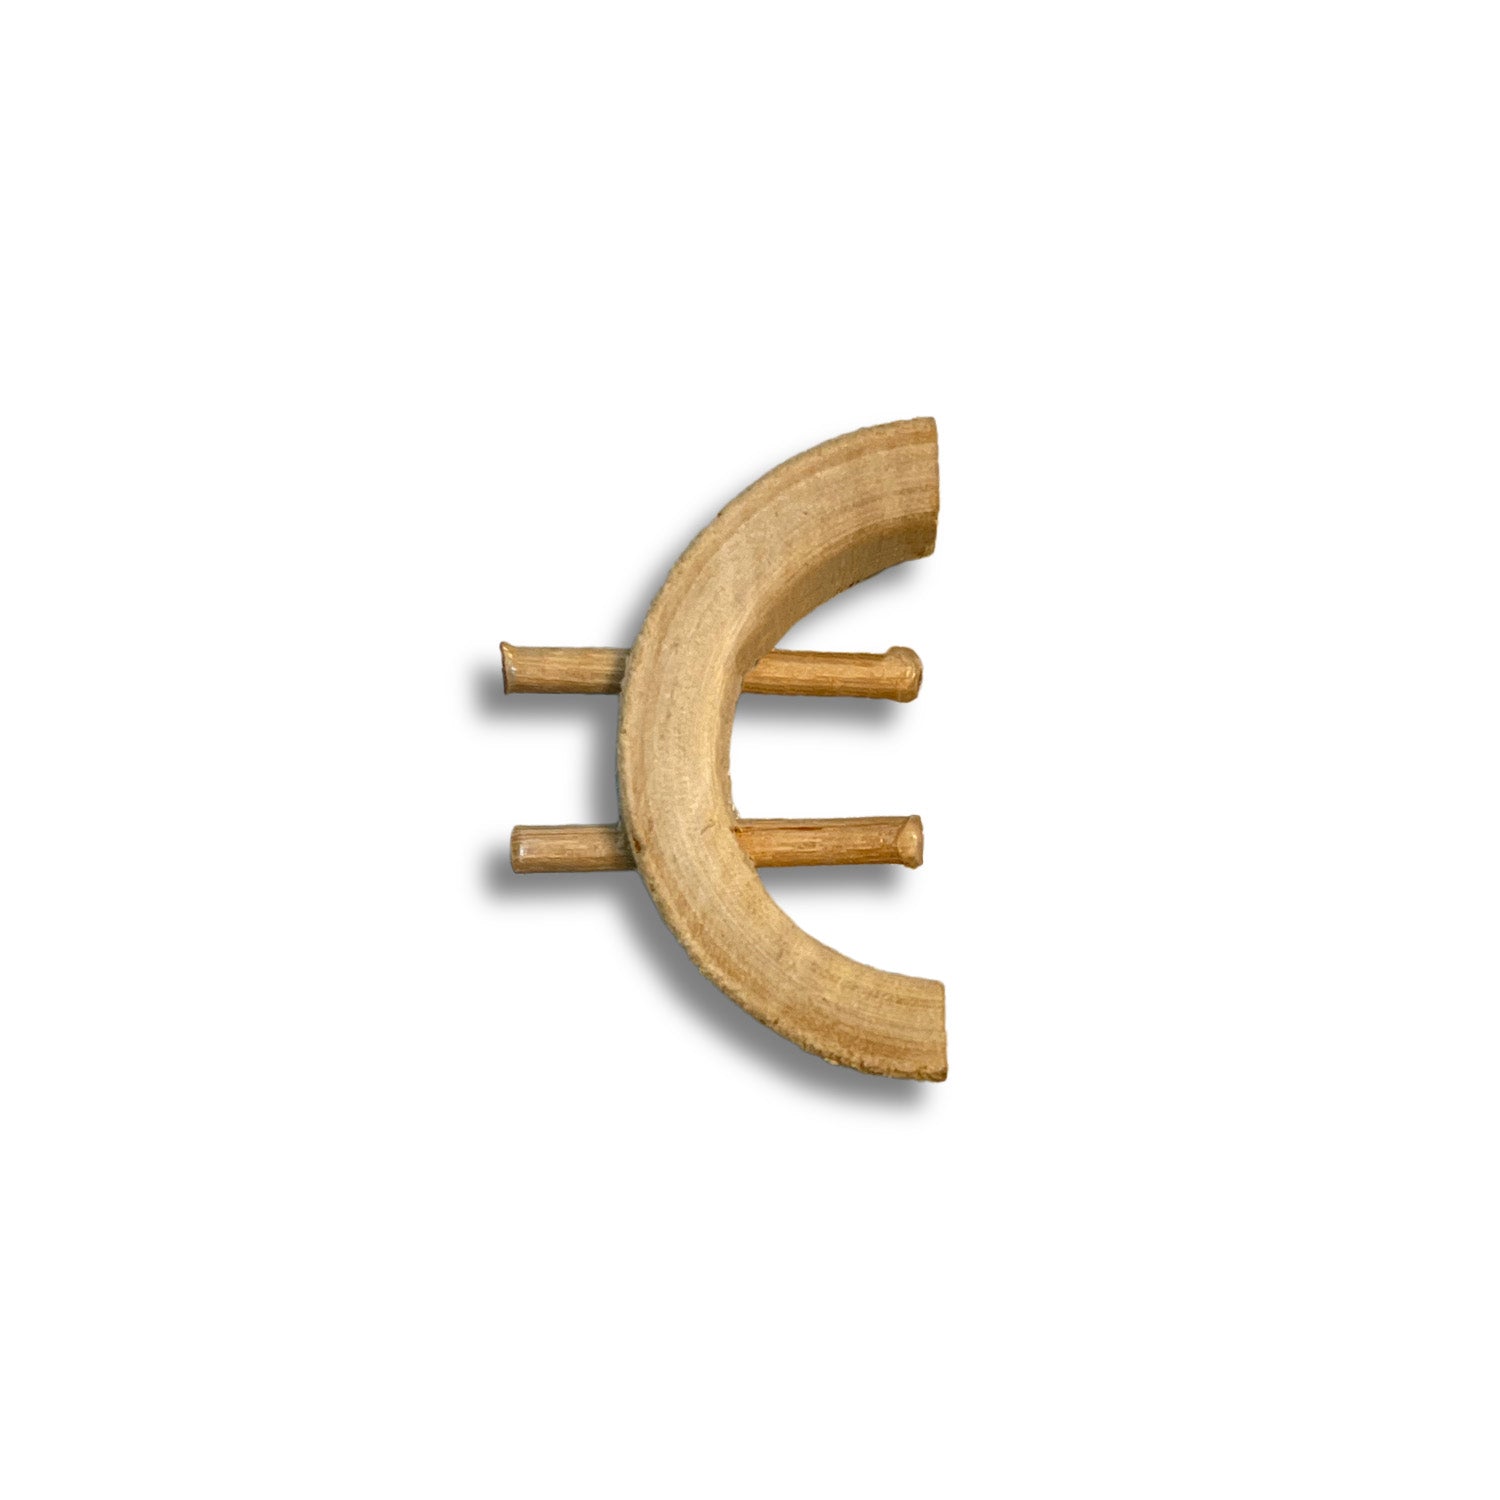 € (Euro)